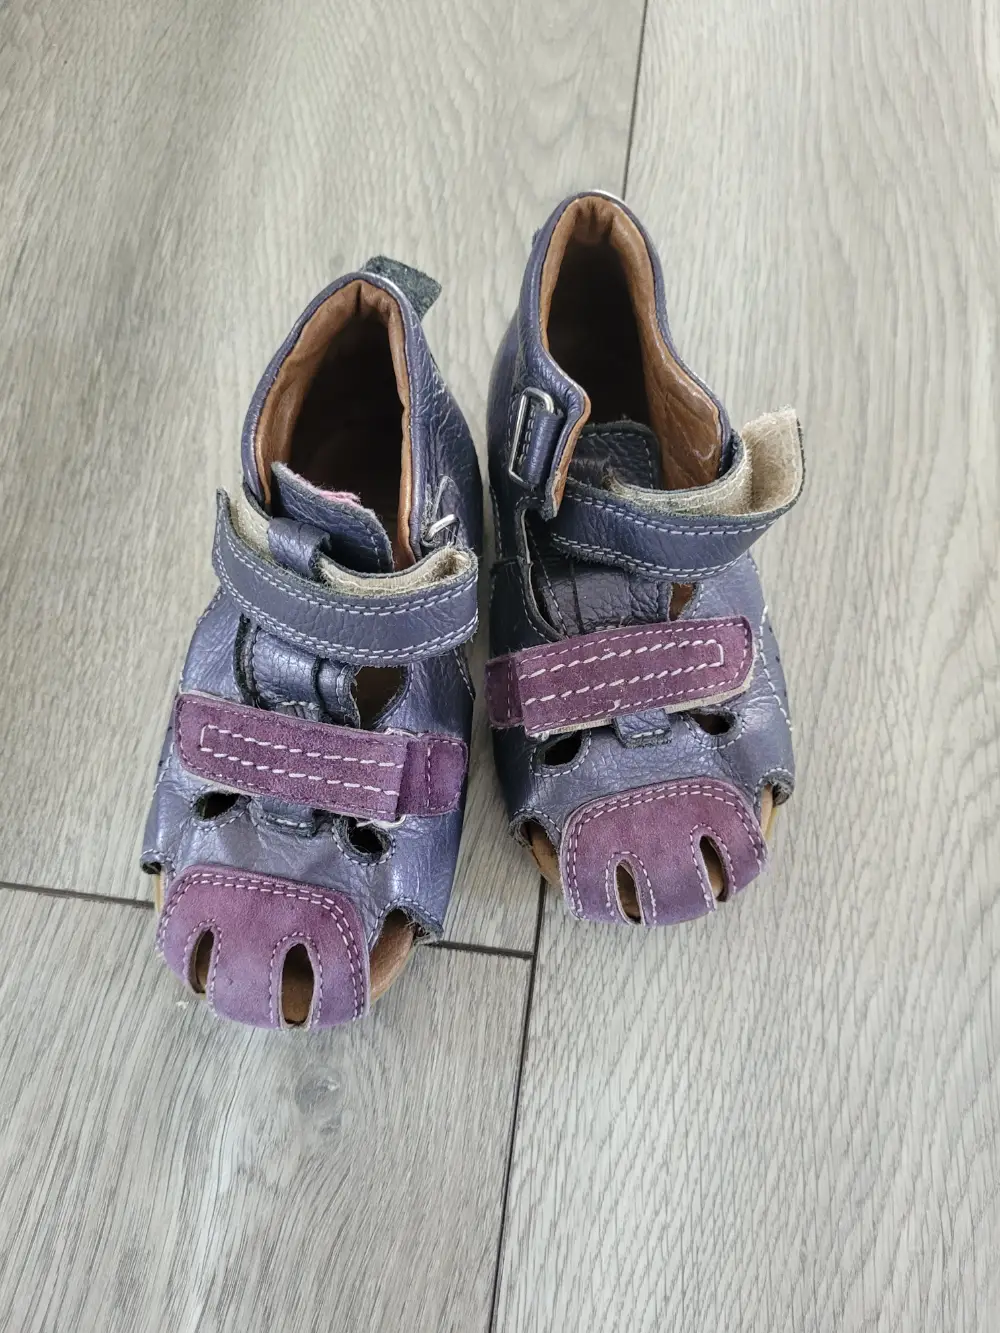 Køb Bykier Sandaler størrelse 24 af Charlotte på Reshopper · Shop secondhand til børn, mor og bolig